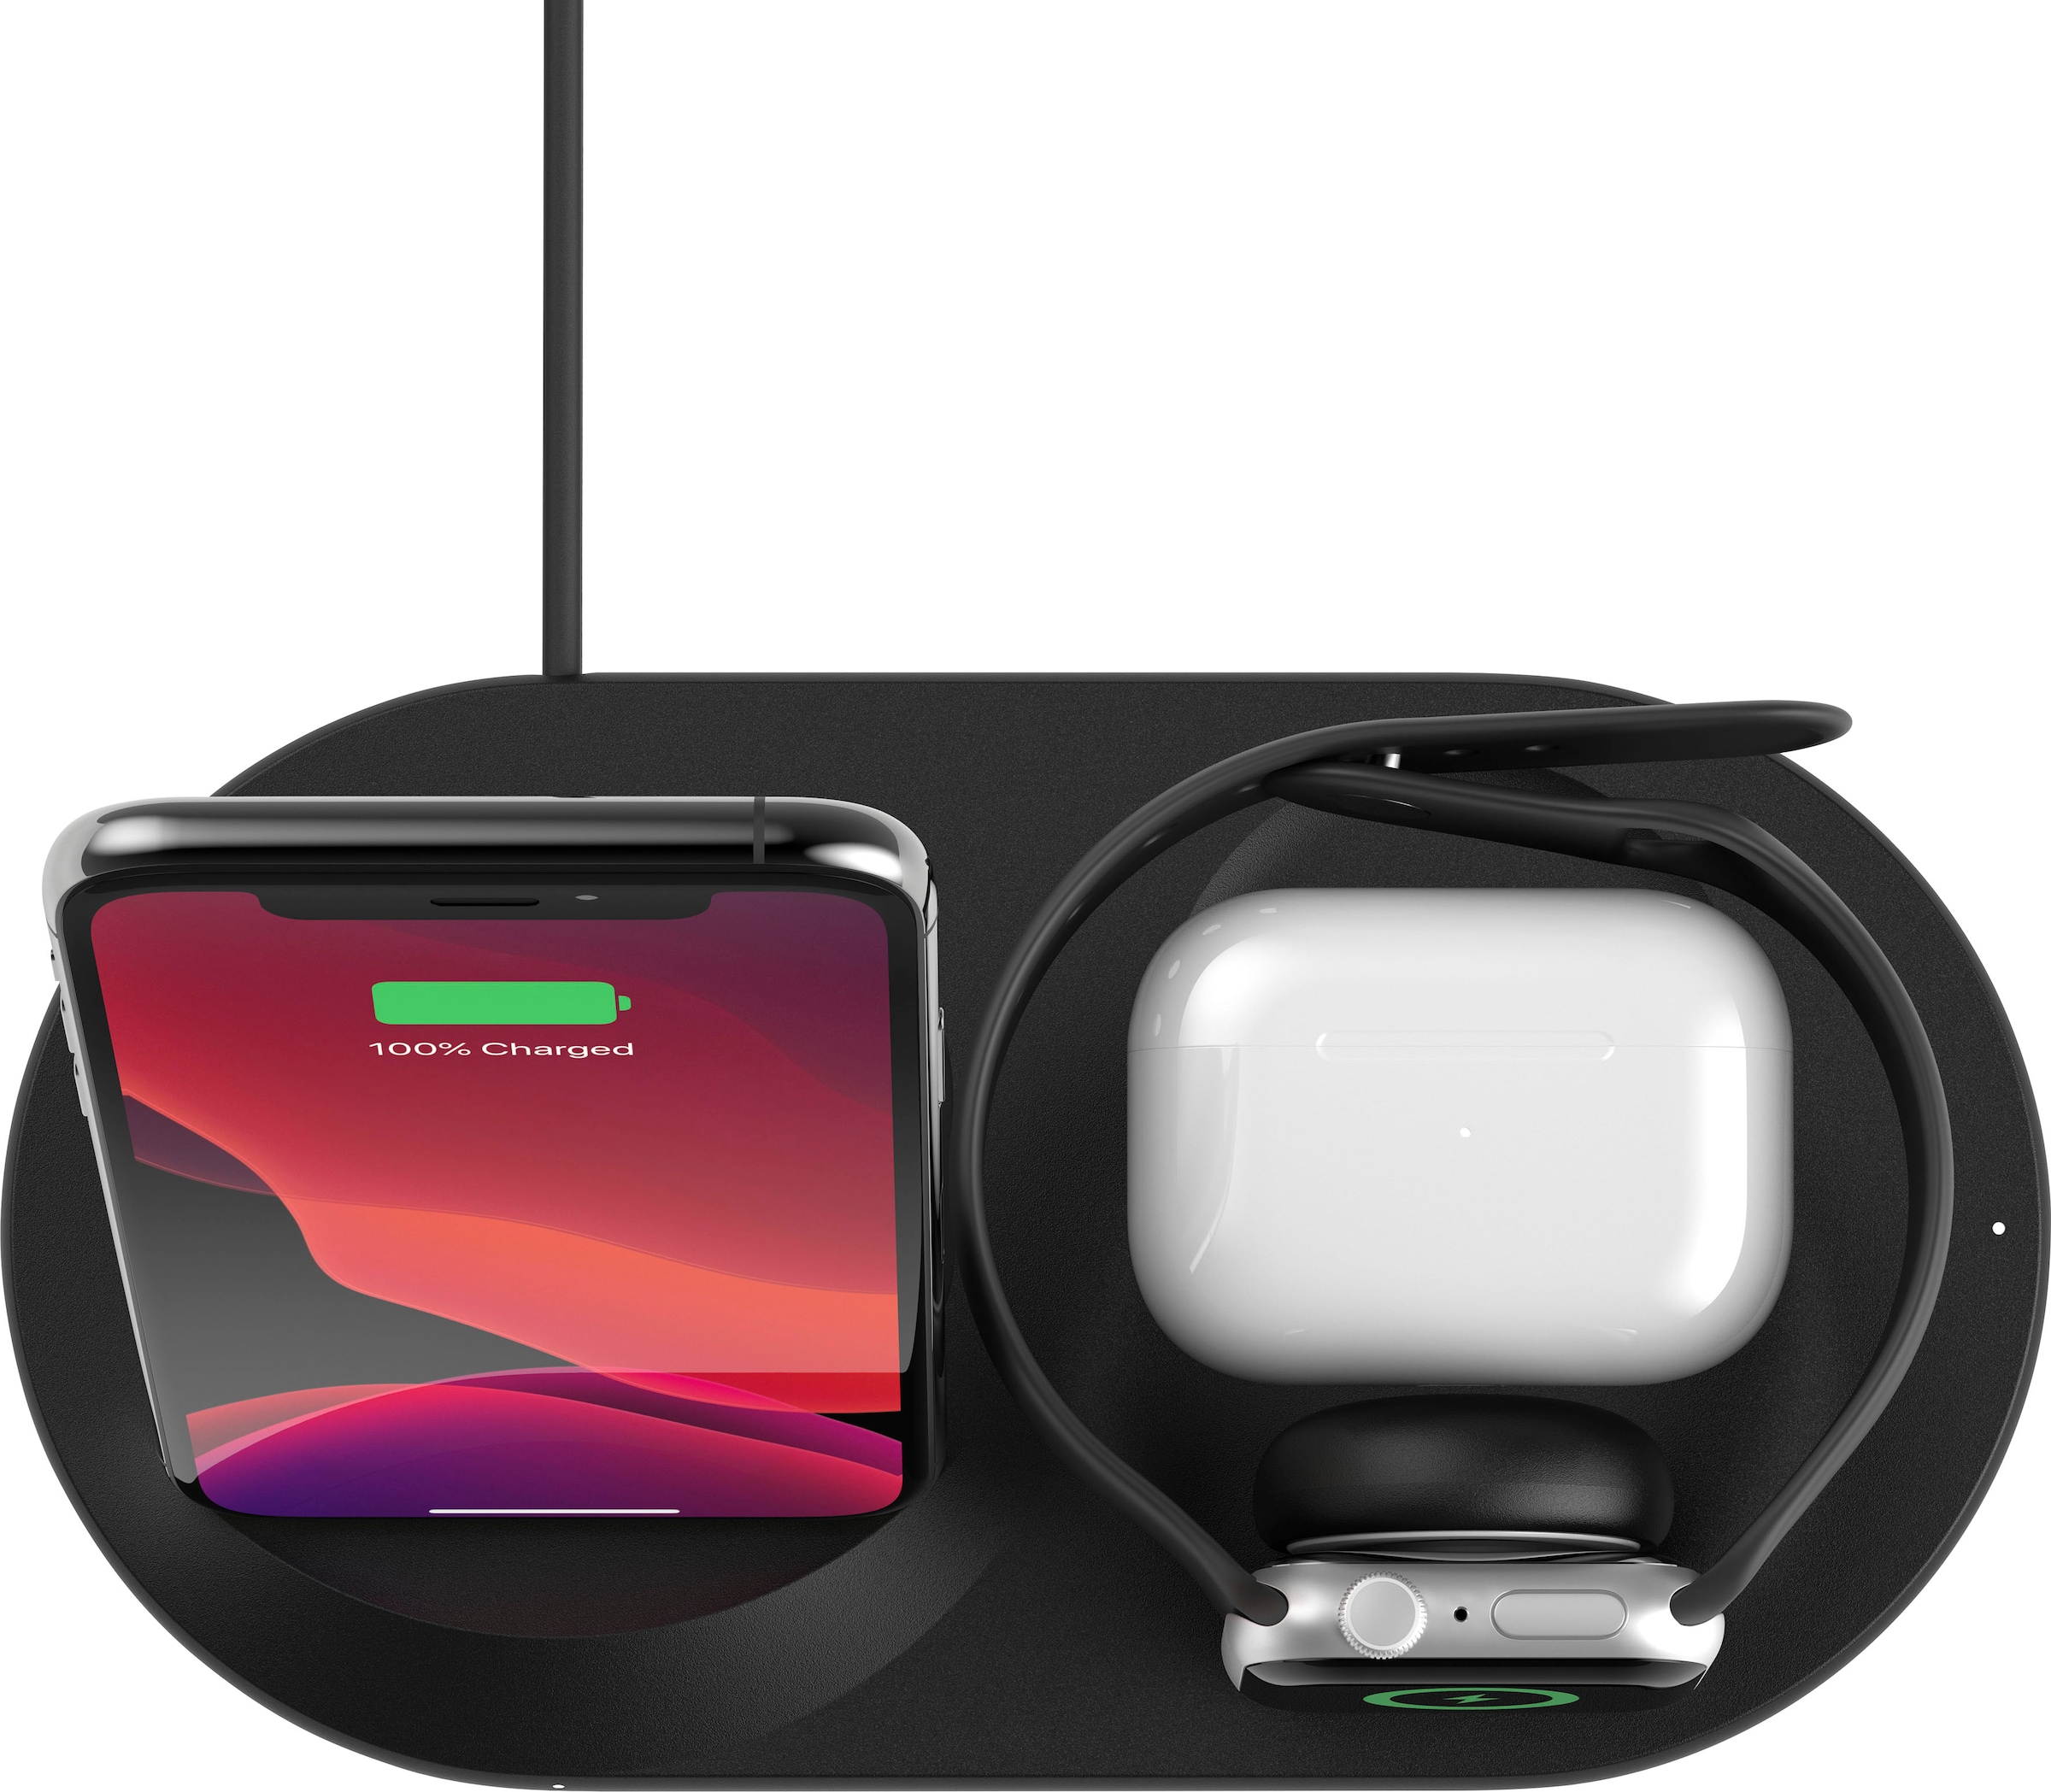 Belkin hat eine neue Ladestation für iPhones und AirPods mit MagSafe-Unterstützung  vorgestellt